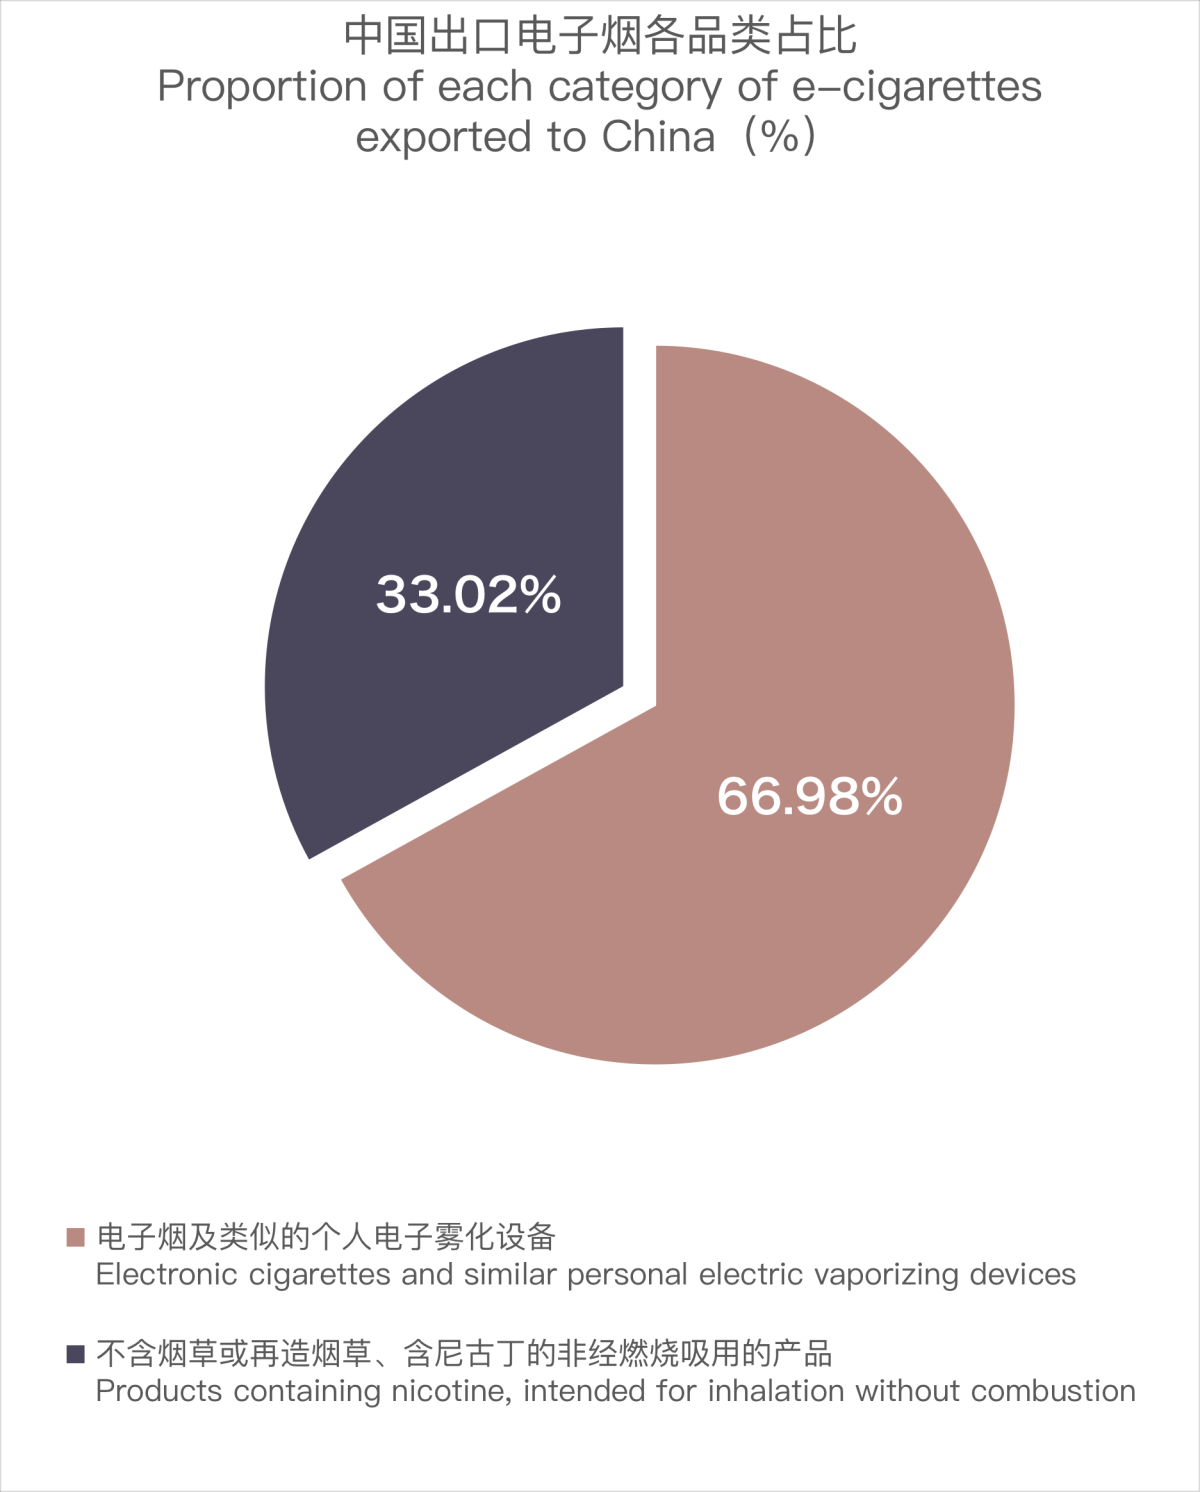 12月中国出口法国电子烟约1363万美元 环比下降5.48%